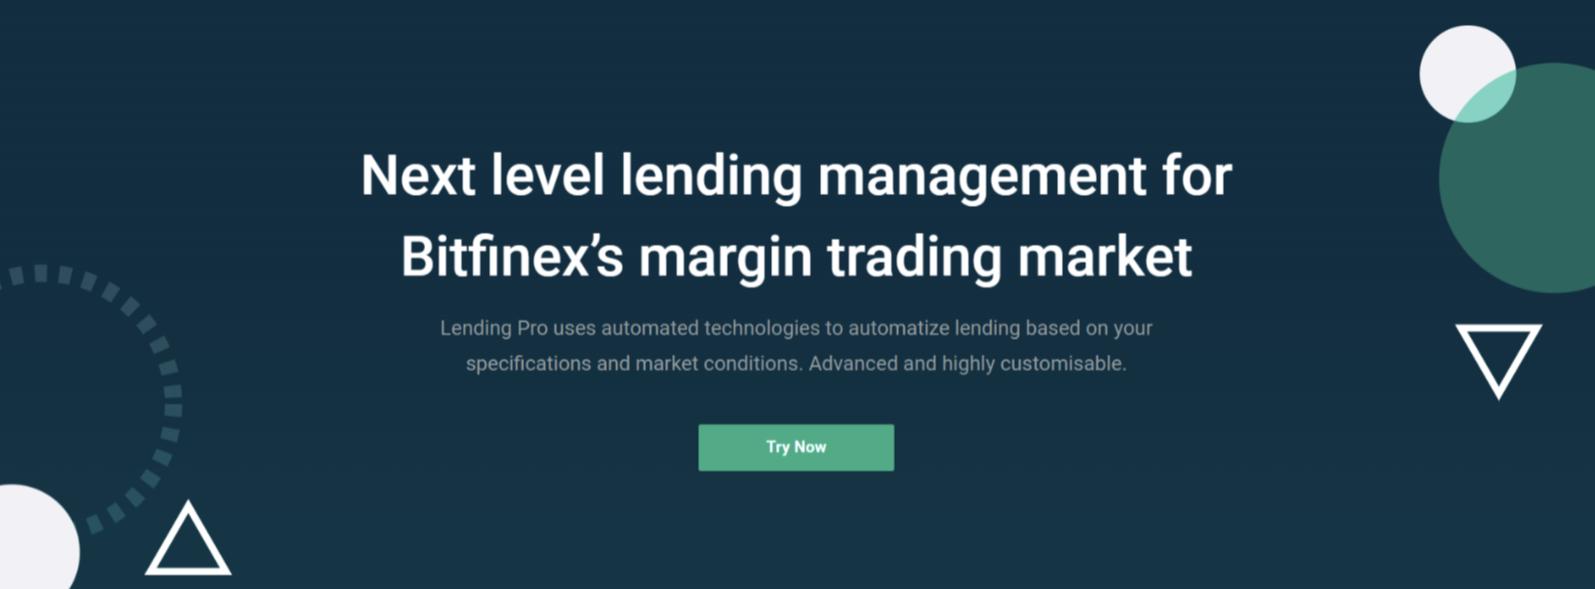 bitfinex platform: best crypto currency exchanges for margin lending